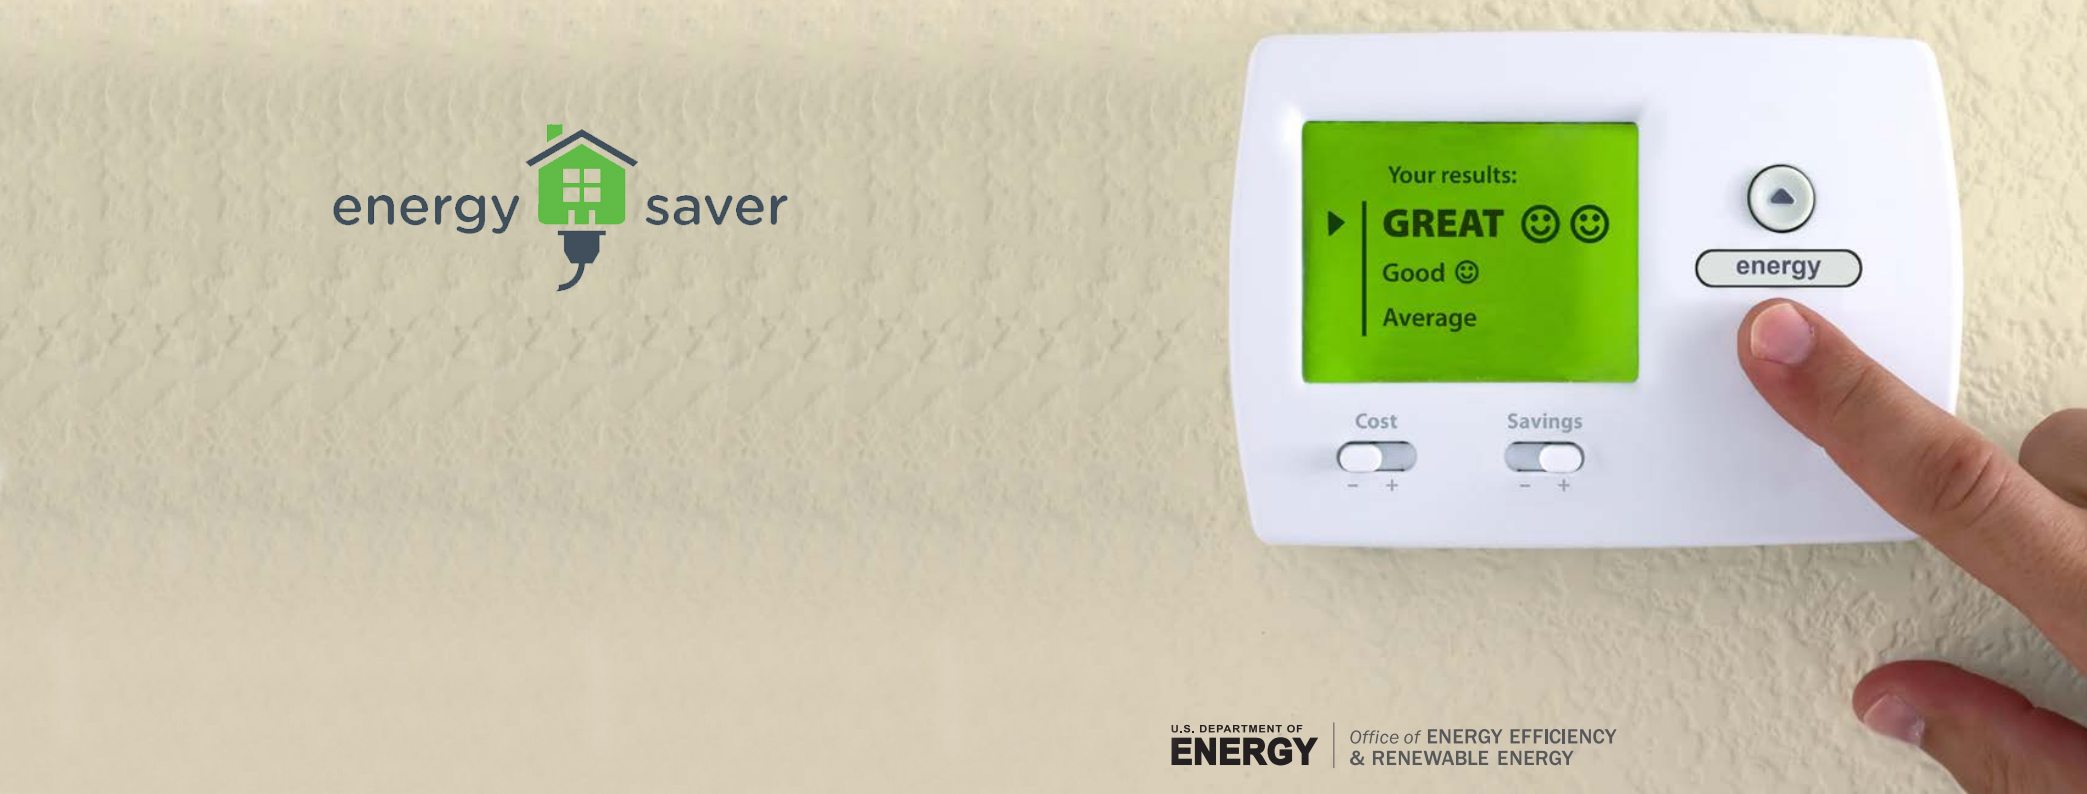 DOE Energy Saver Guide